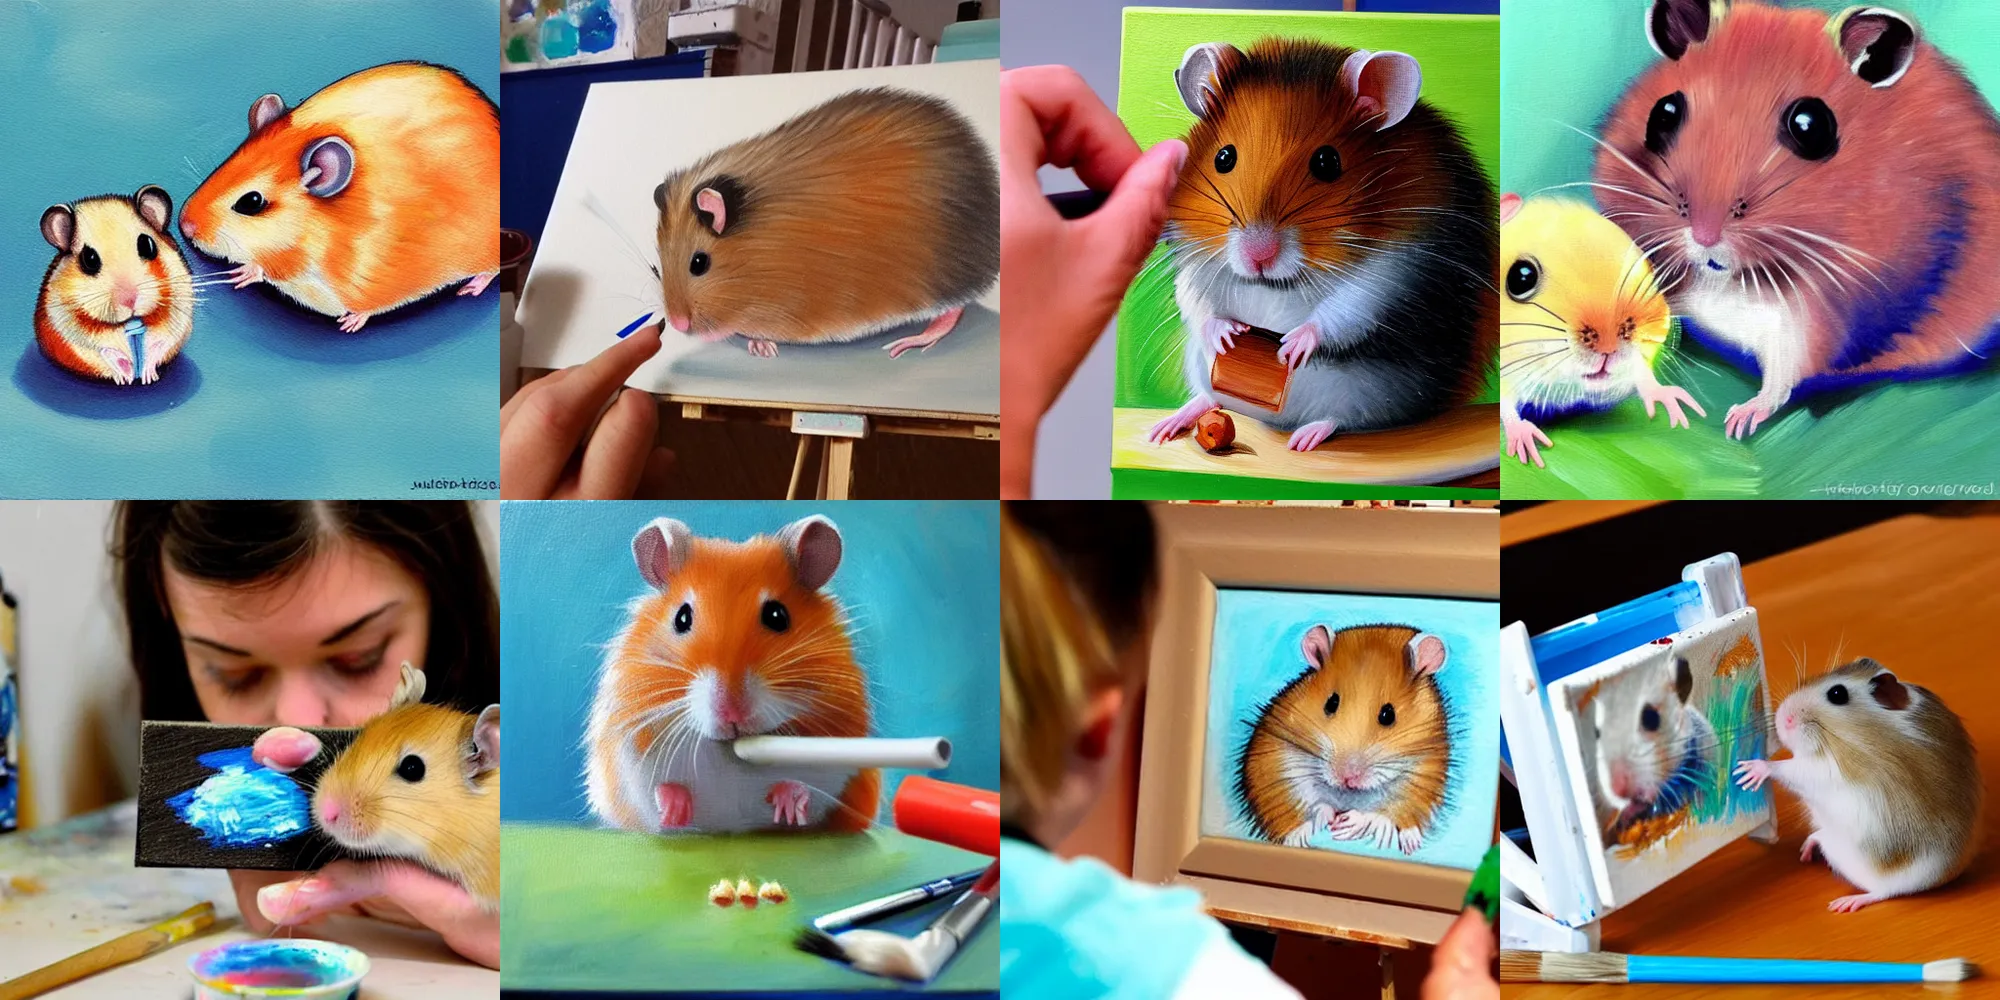 Prompt: a hamster, painting a hamster, painting a hamster